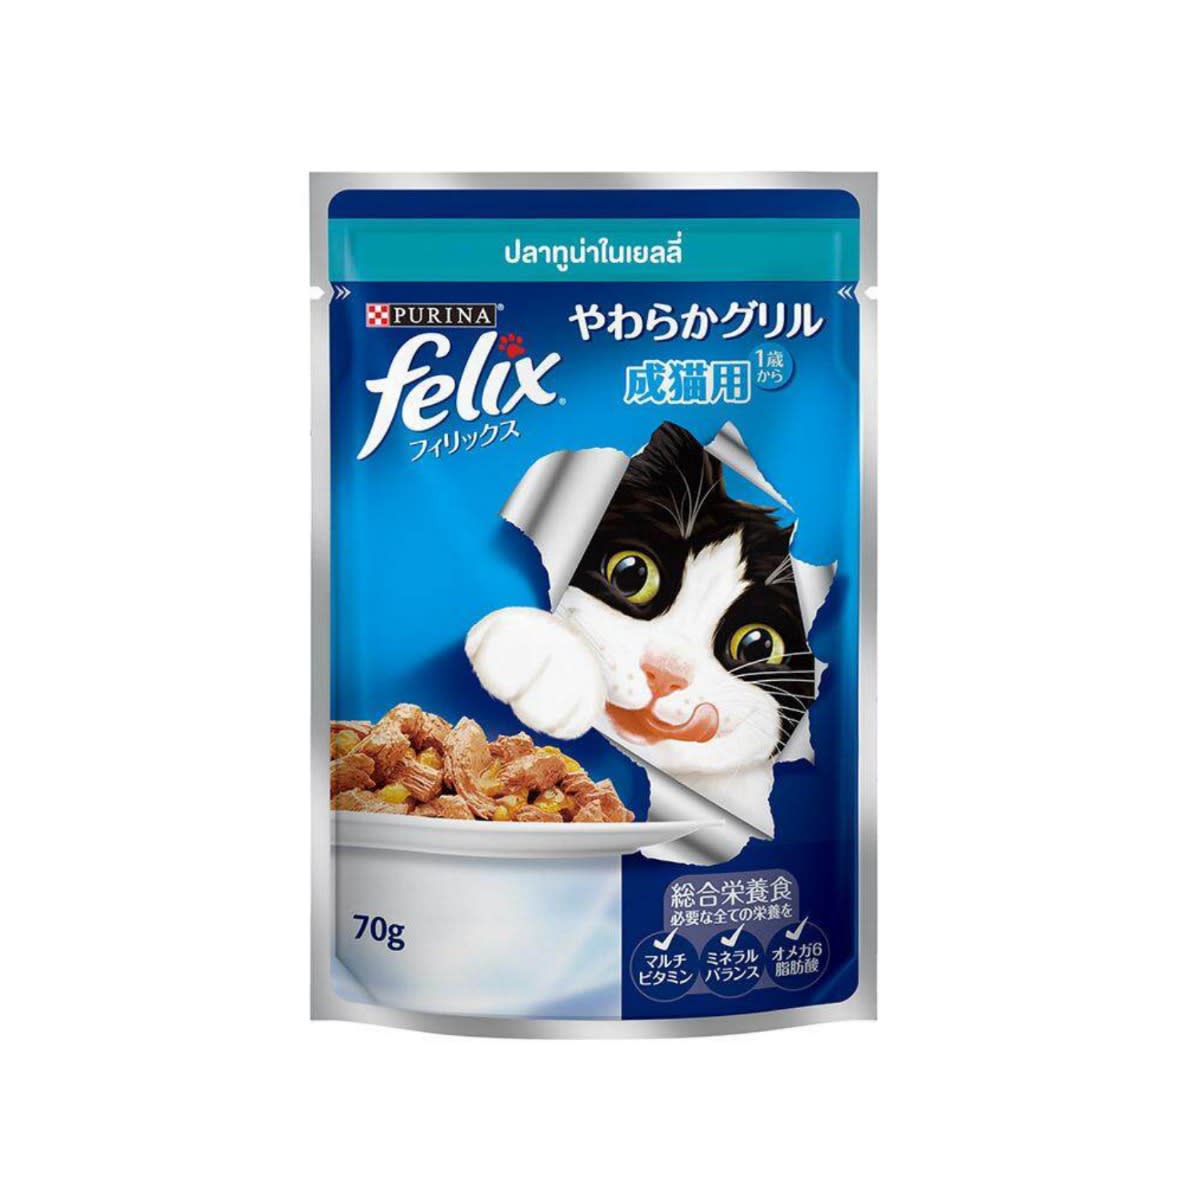 Felix เฟลิกซ์ อาหารเปียก สำหรับแมวโต รสปลาทูน่าในเยลลี่ 70 g_2